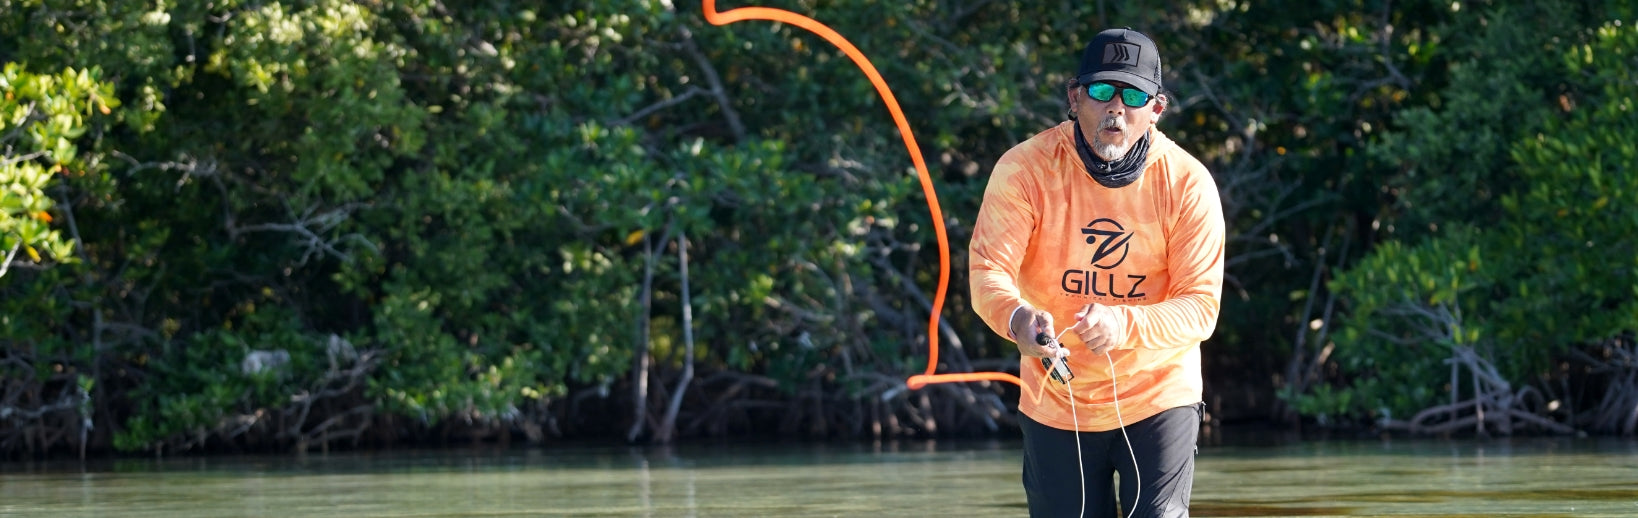 Man In Orange Shirt Fishing